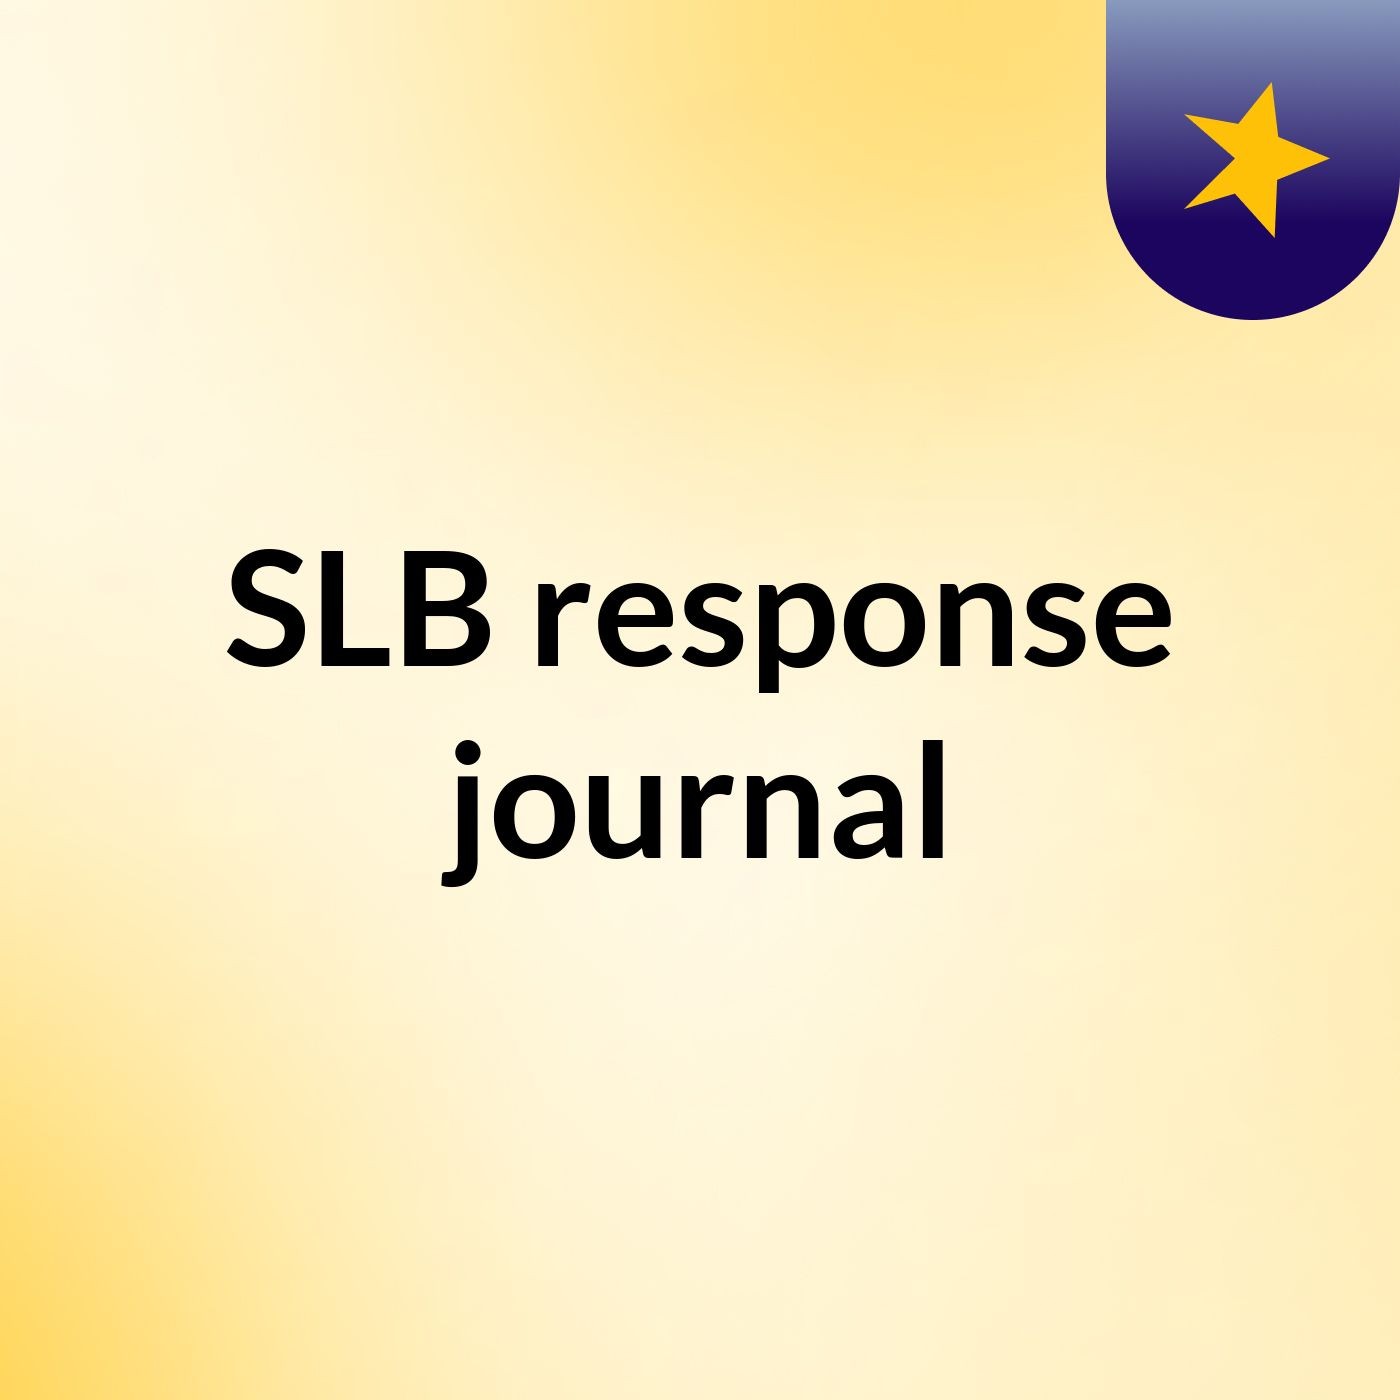 Episode 5 - SLB response journal